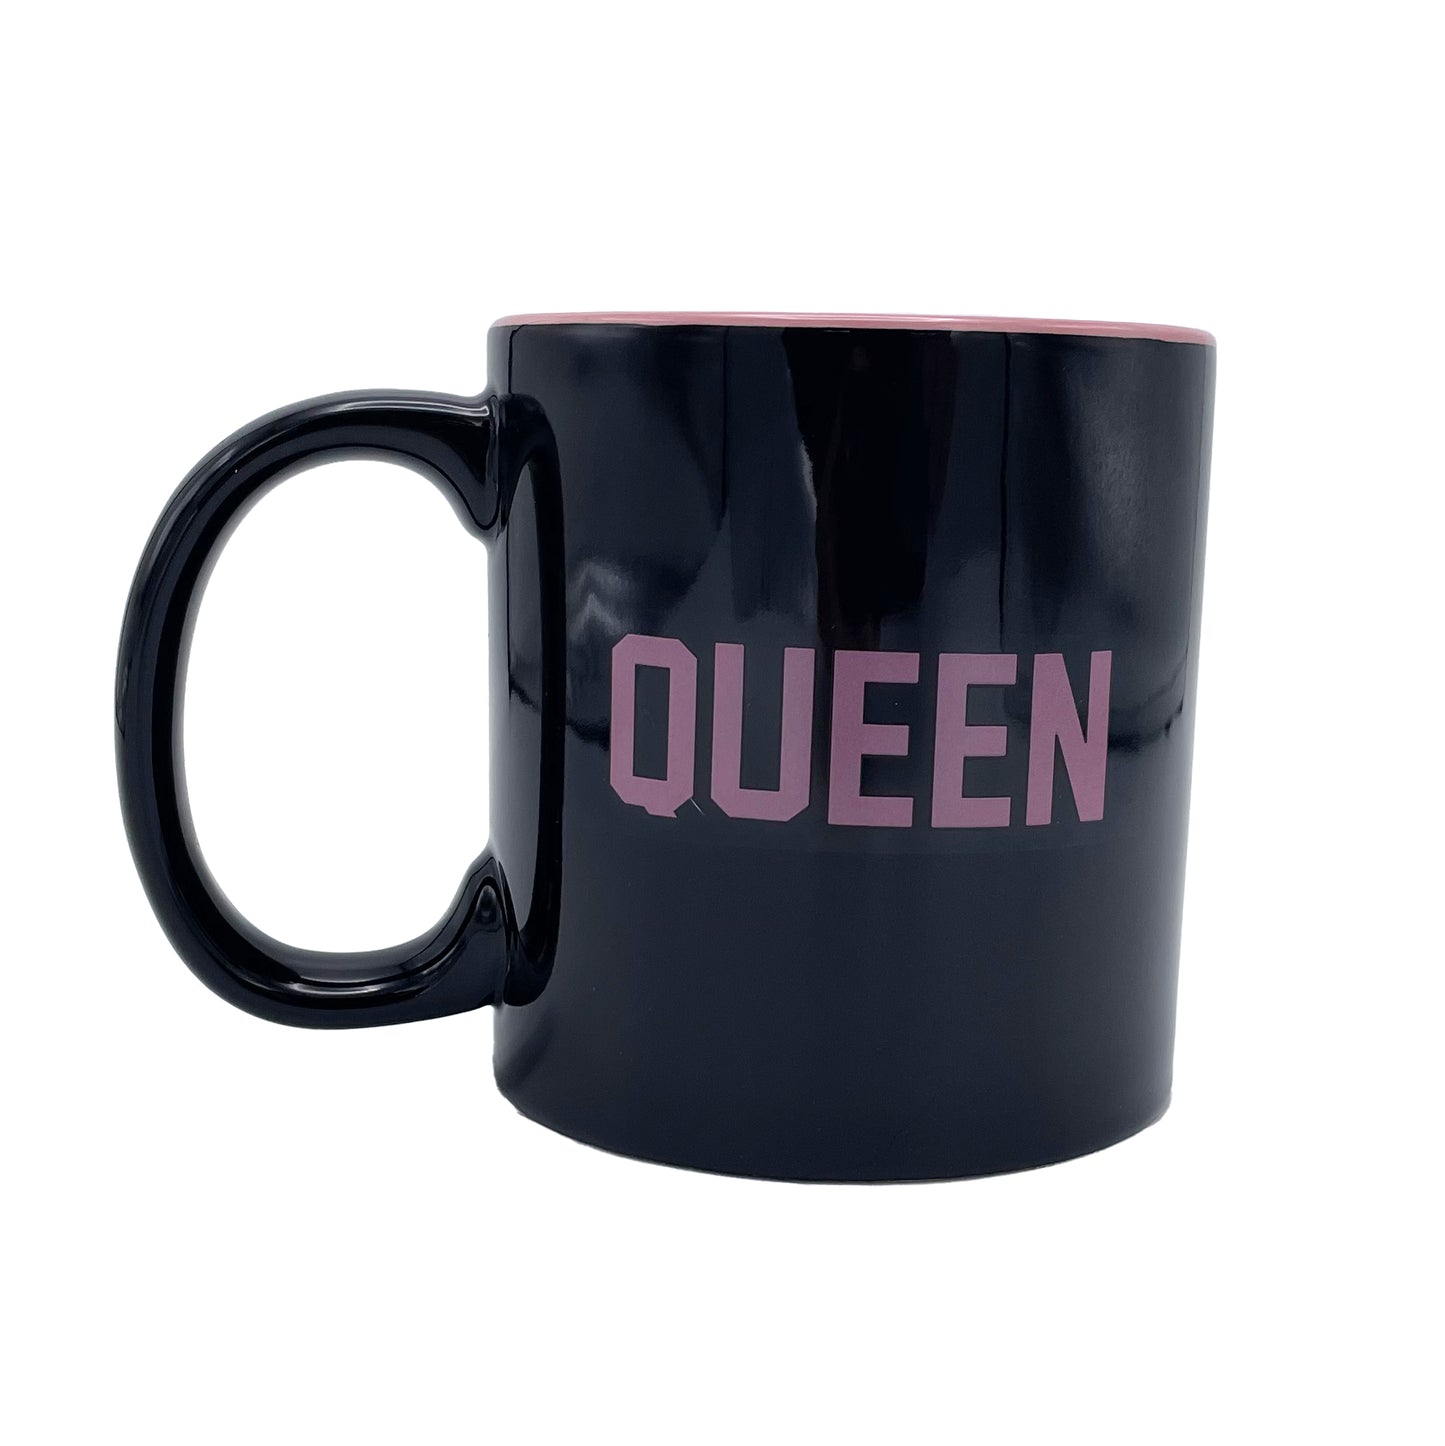 Giant Queen Mug